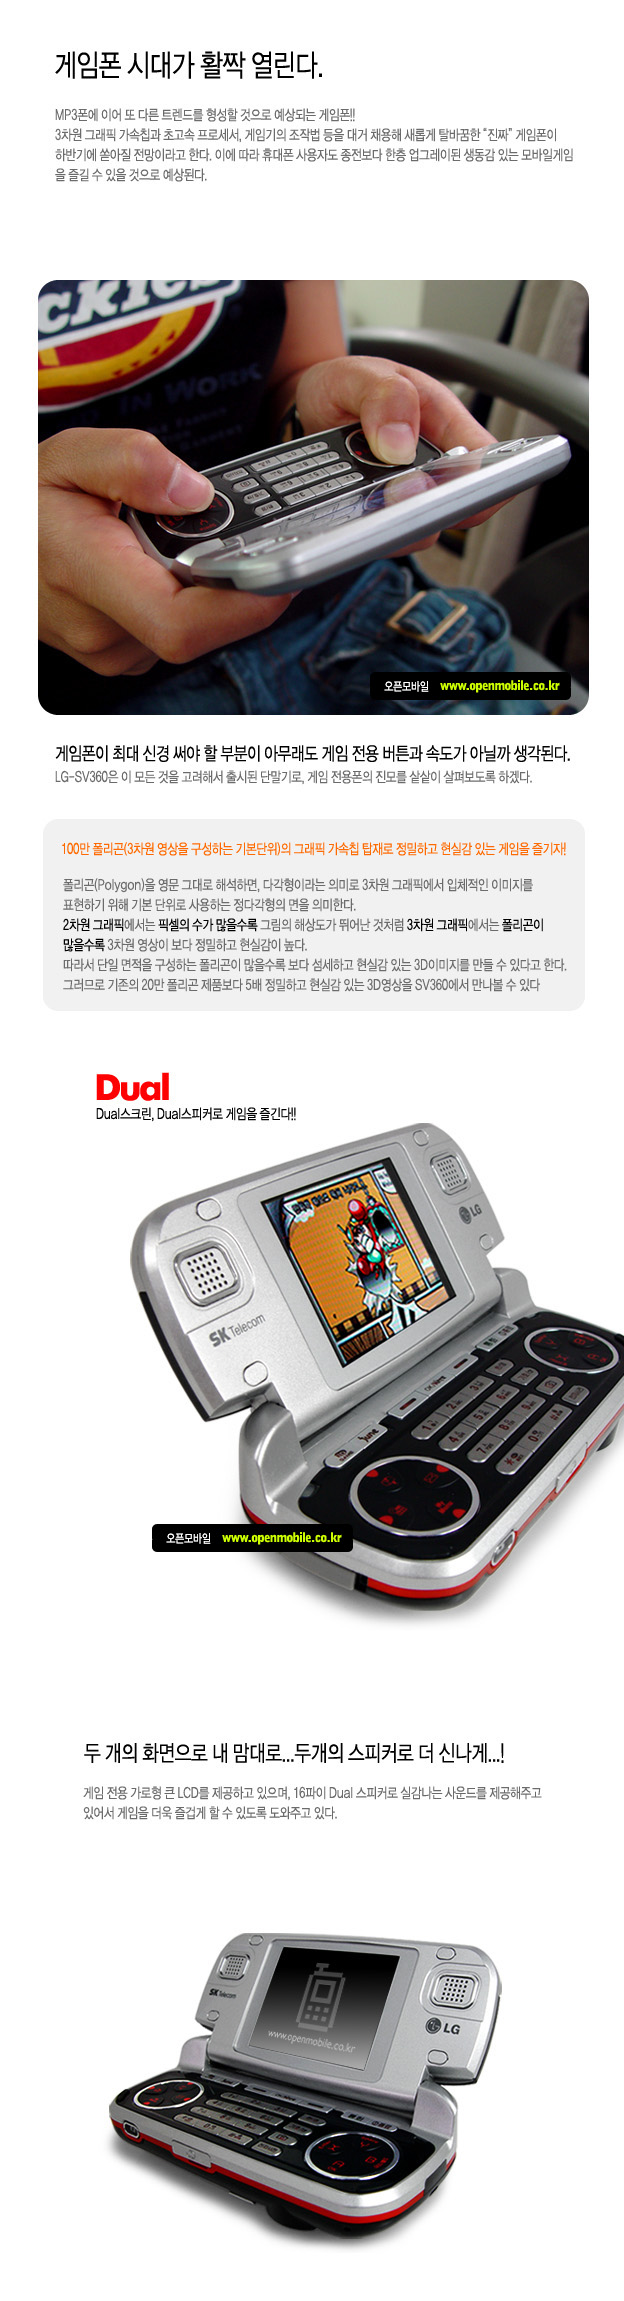 韩国手机设计(2)